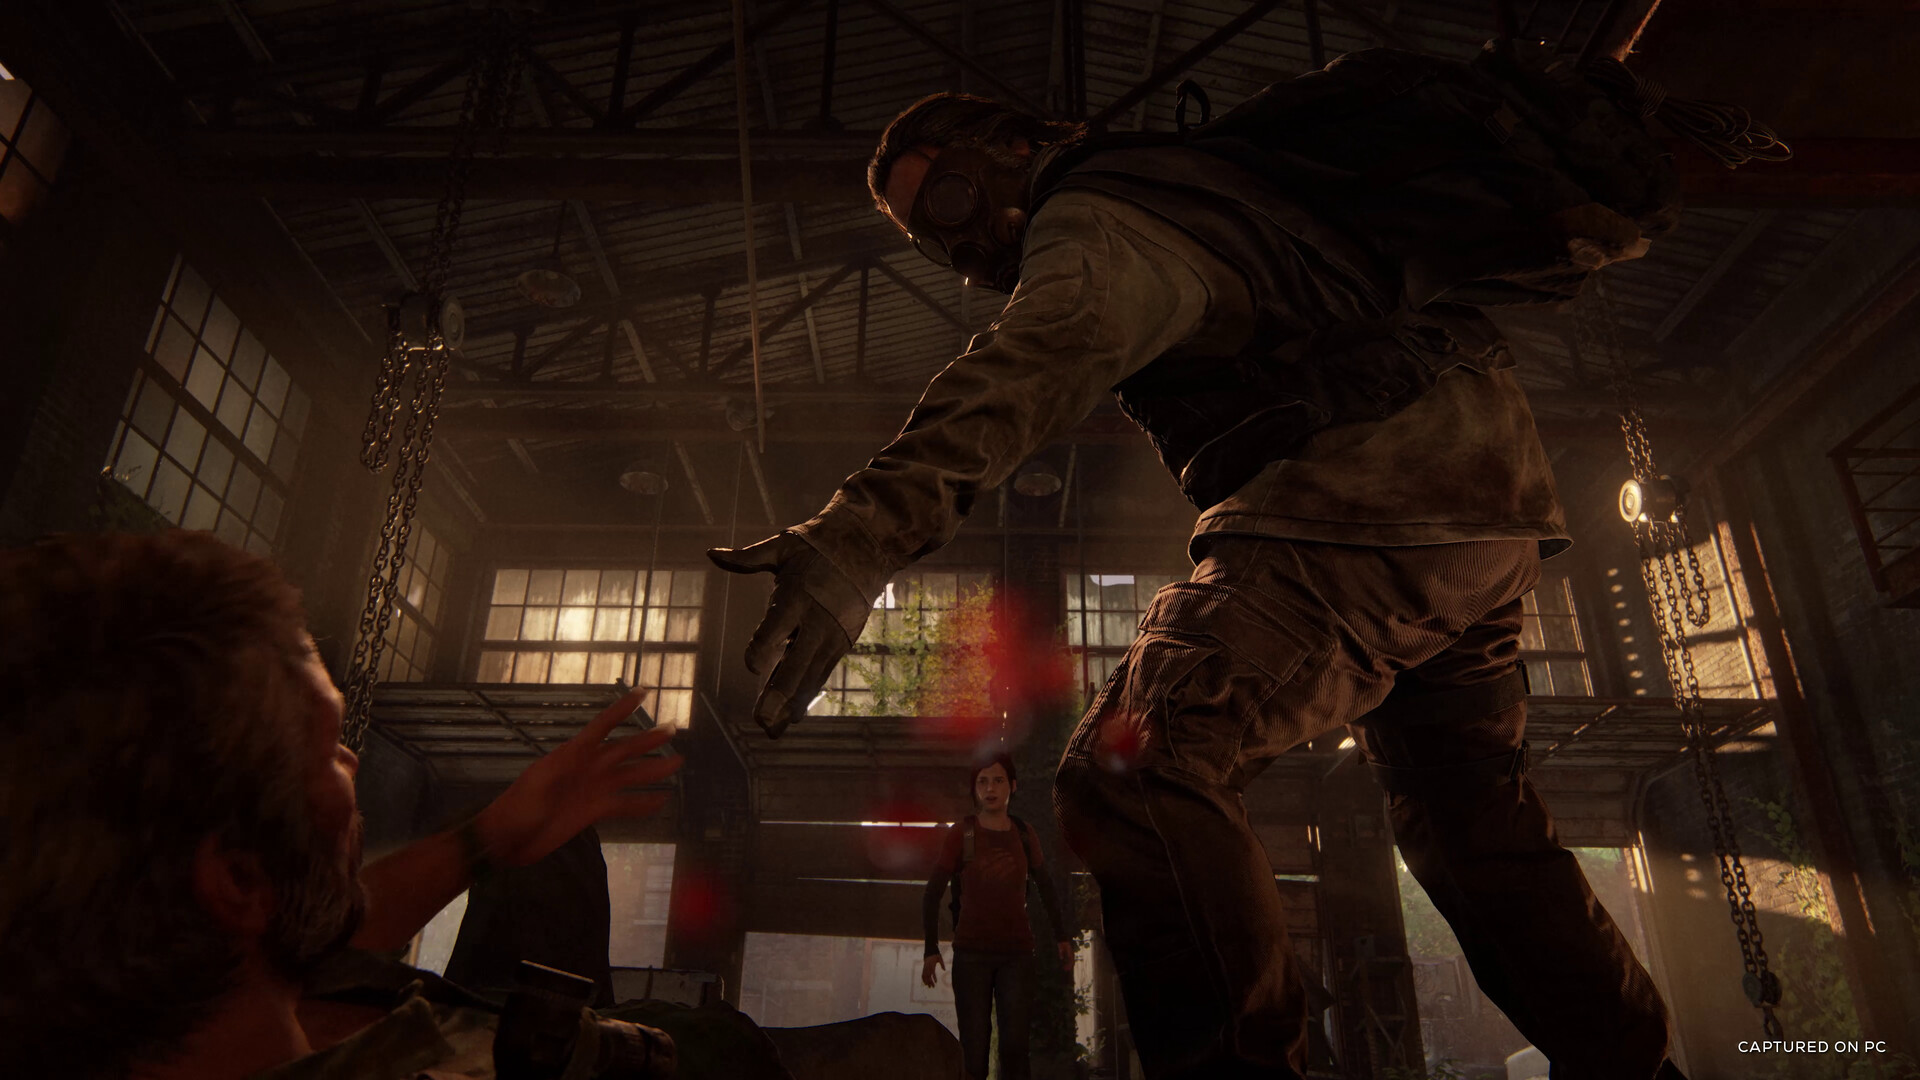 The Last of Us Parte I será compatível com Steam Deck